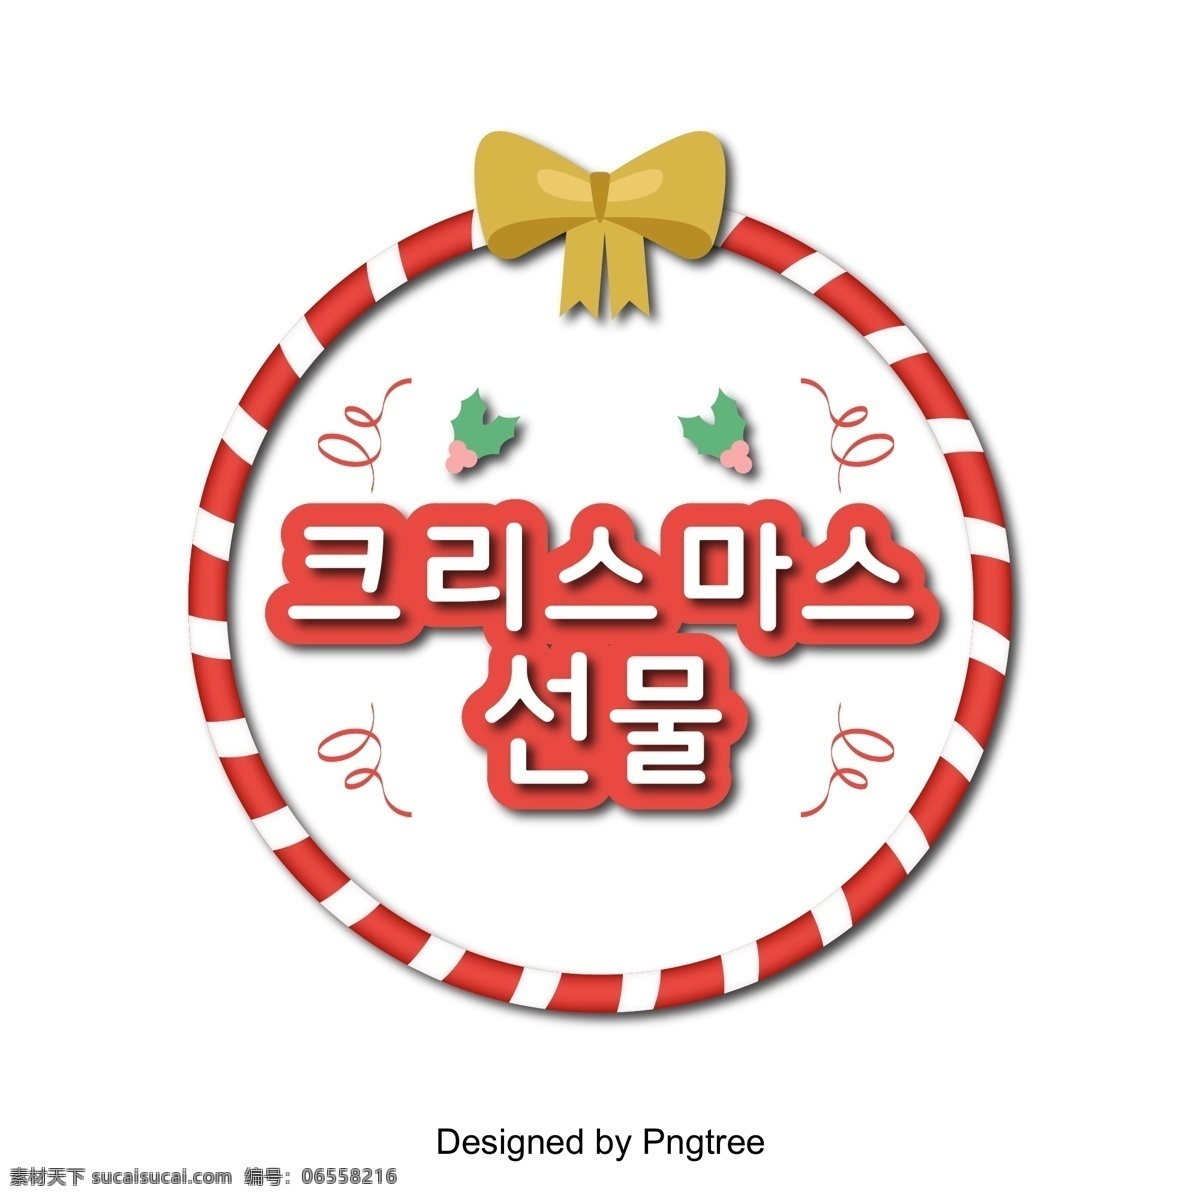 圣诞 红 礼物 盛大 庆祝活动 现场 人物 圣诞礼物 红色 庆祝礼物 很棒 立体 这篇论文 韩文 圣诞节 投影 进步 简单 可爱